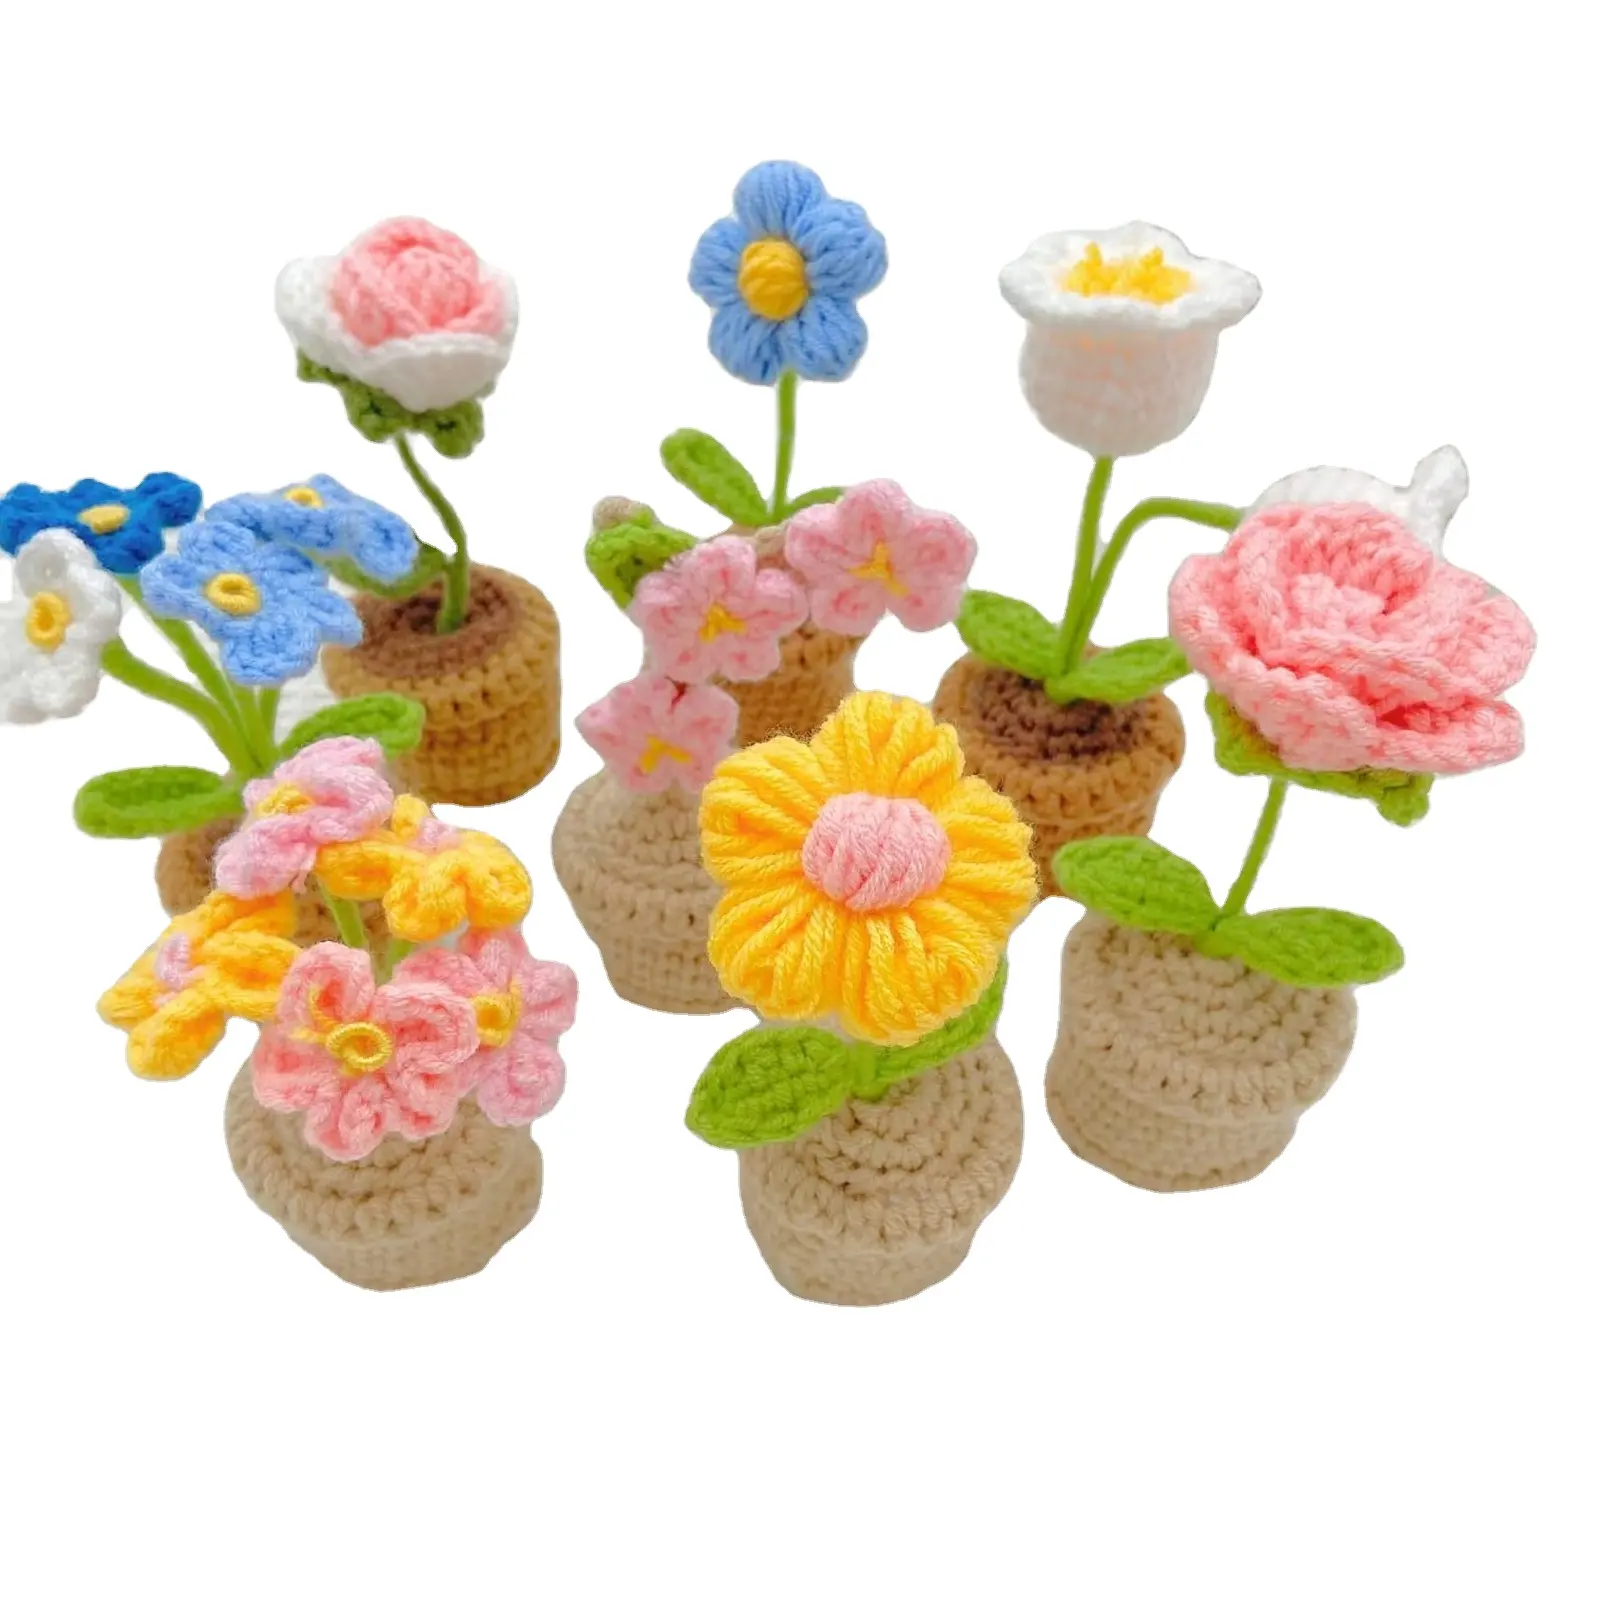 Belle fait à la main Mini fleurs à tricoter en pot tournesol tulipe Rose marguerite Crochet maison bureau voiture décoration Crochet fleurs